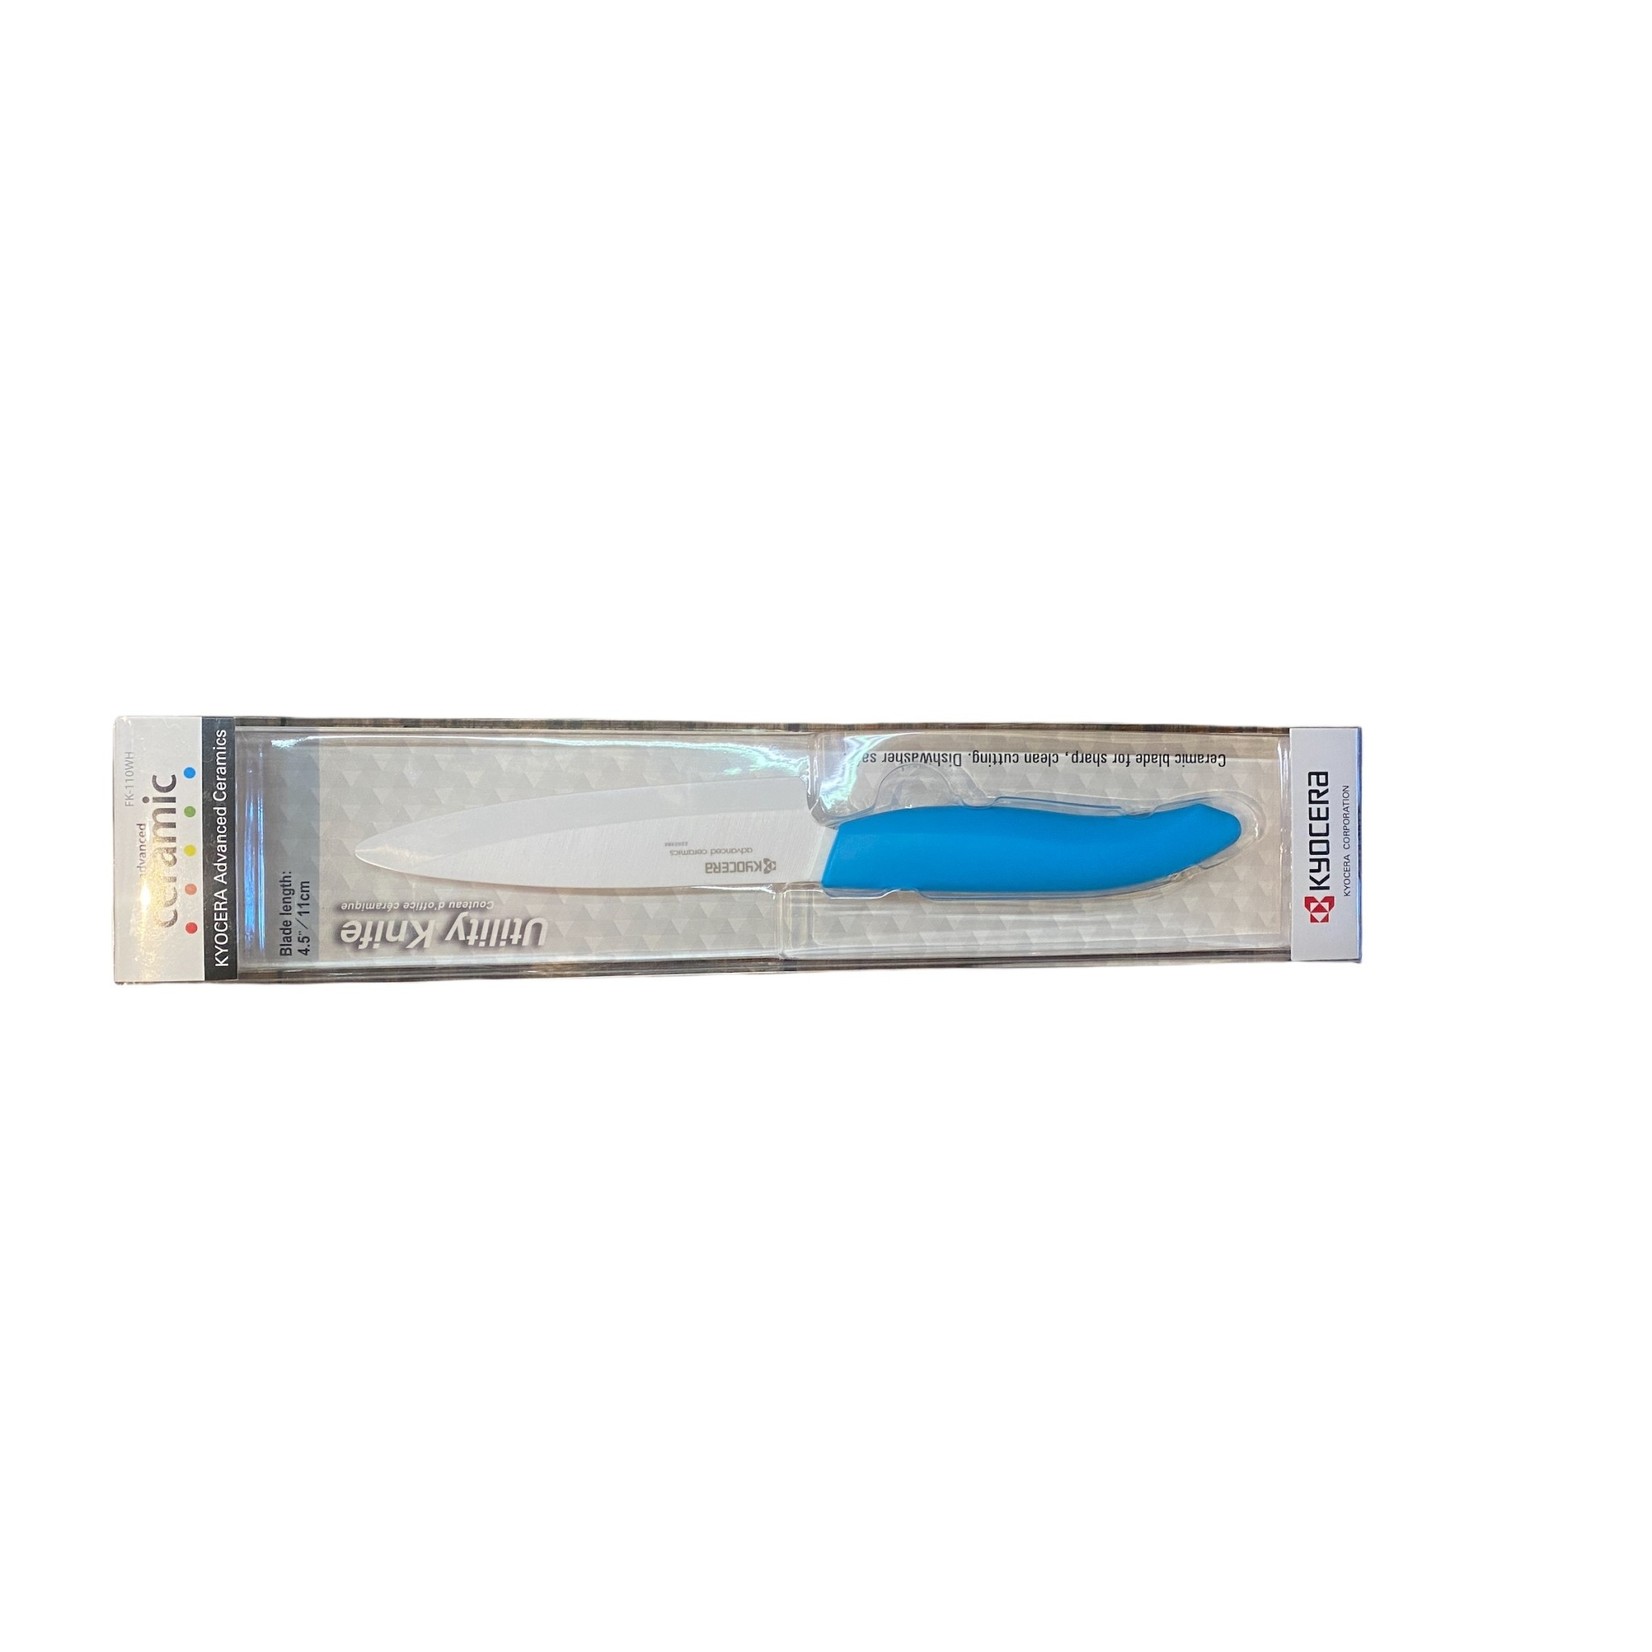 Kyocera Kyocera Utility Knife Blue